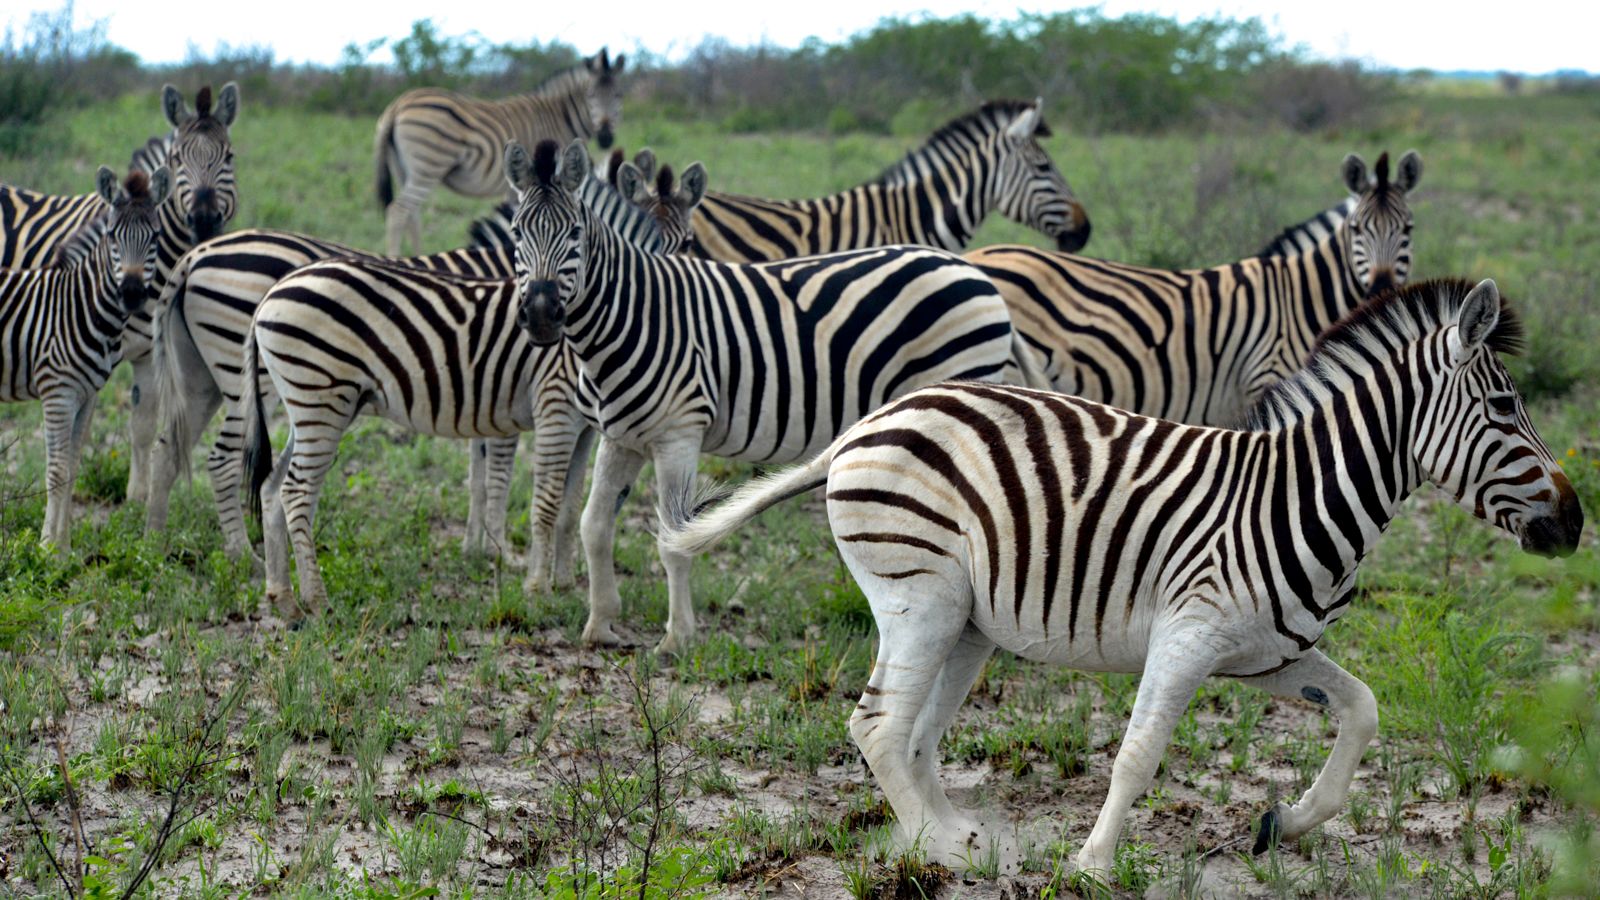 Verlichting extreem auteur The hidden journey made by 20,000 zebras | CNN